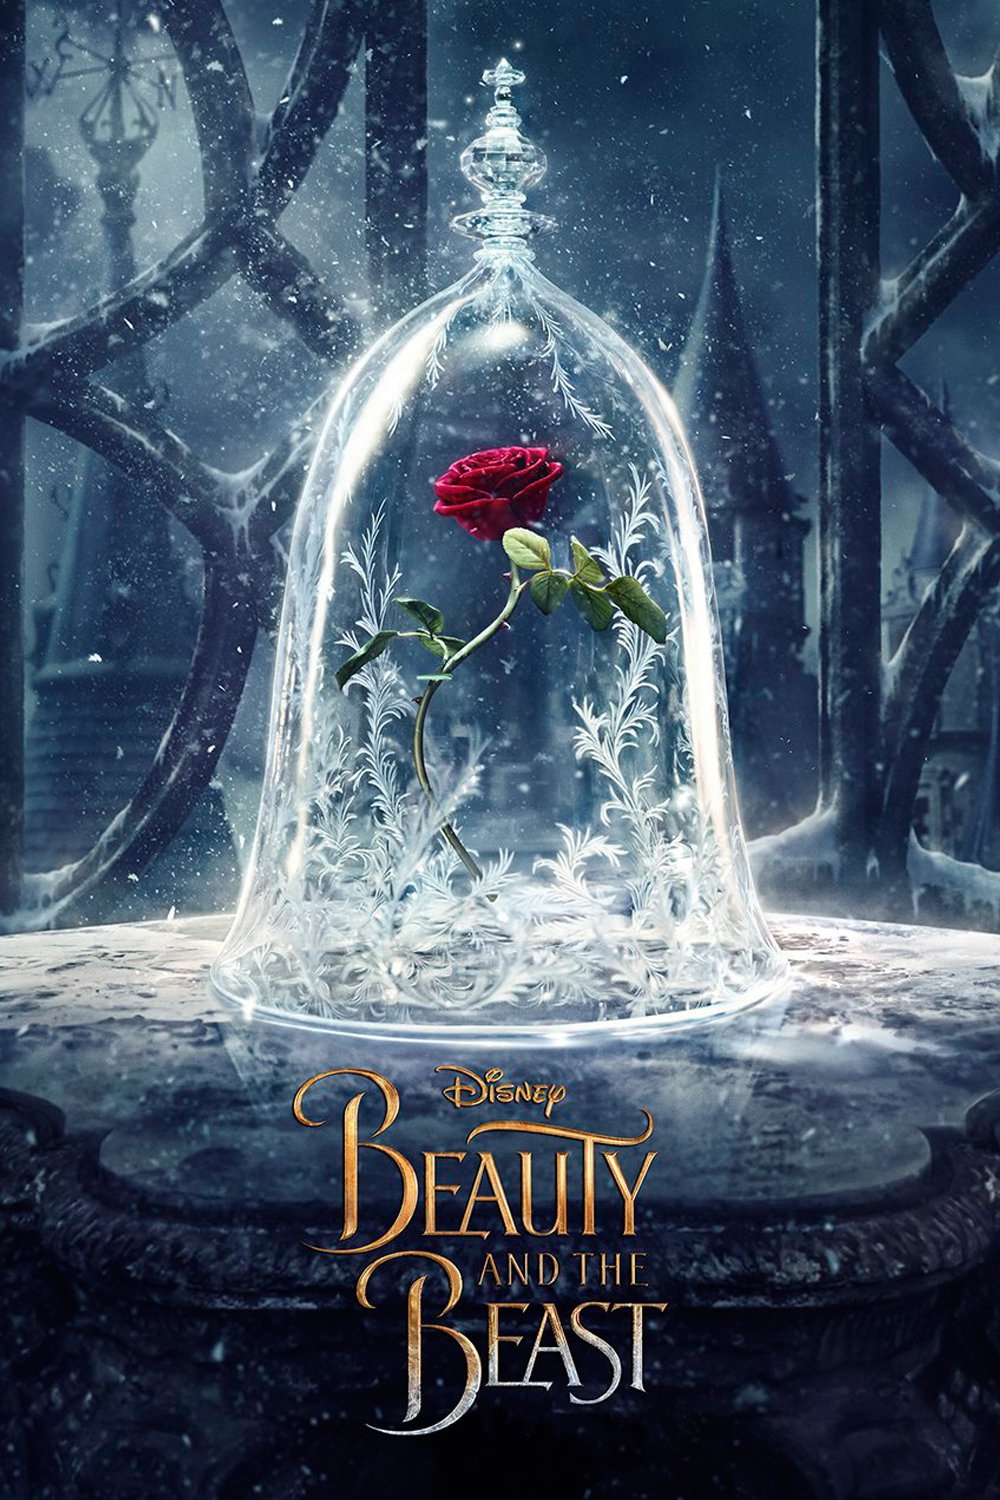 Poster de la película "La bella y la bestia"